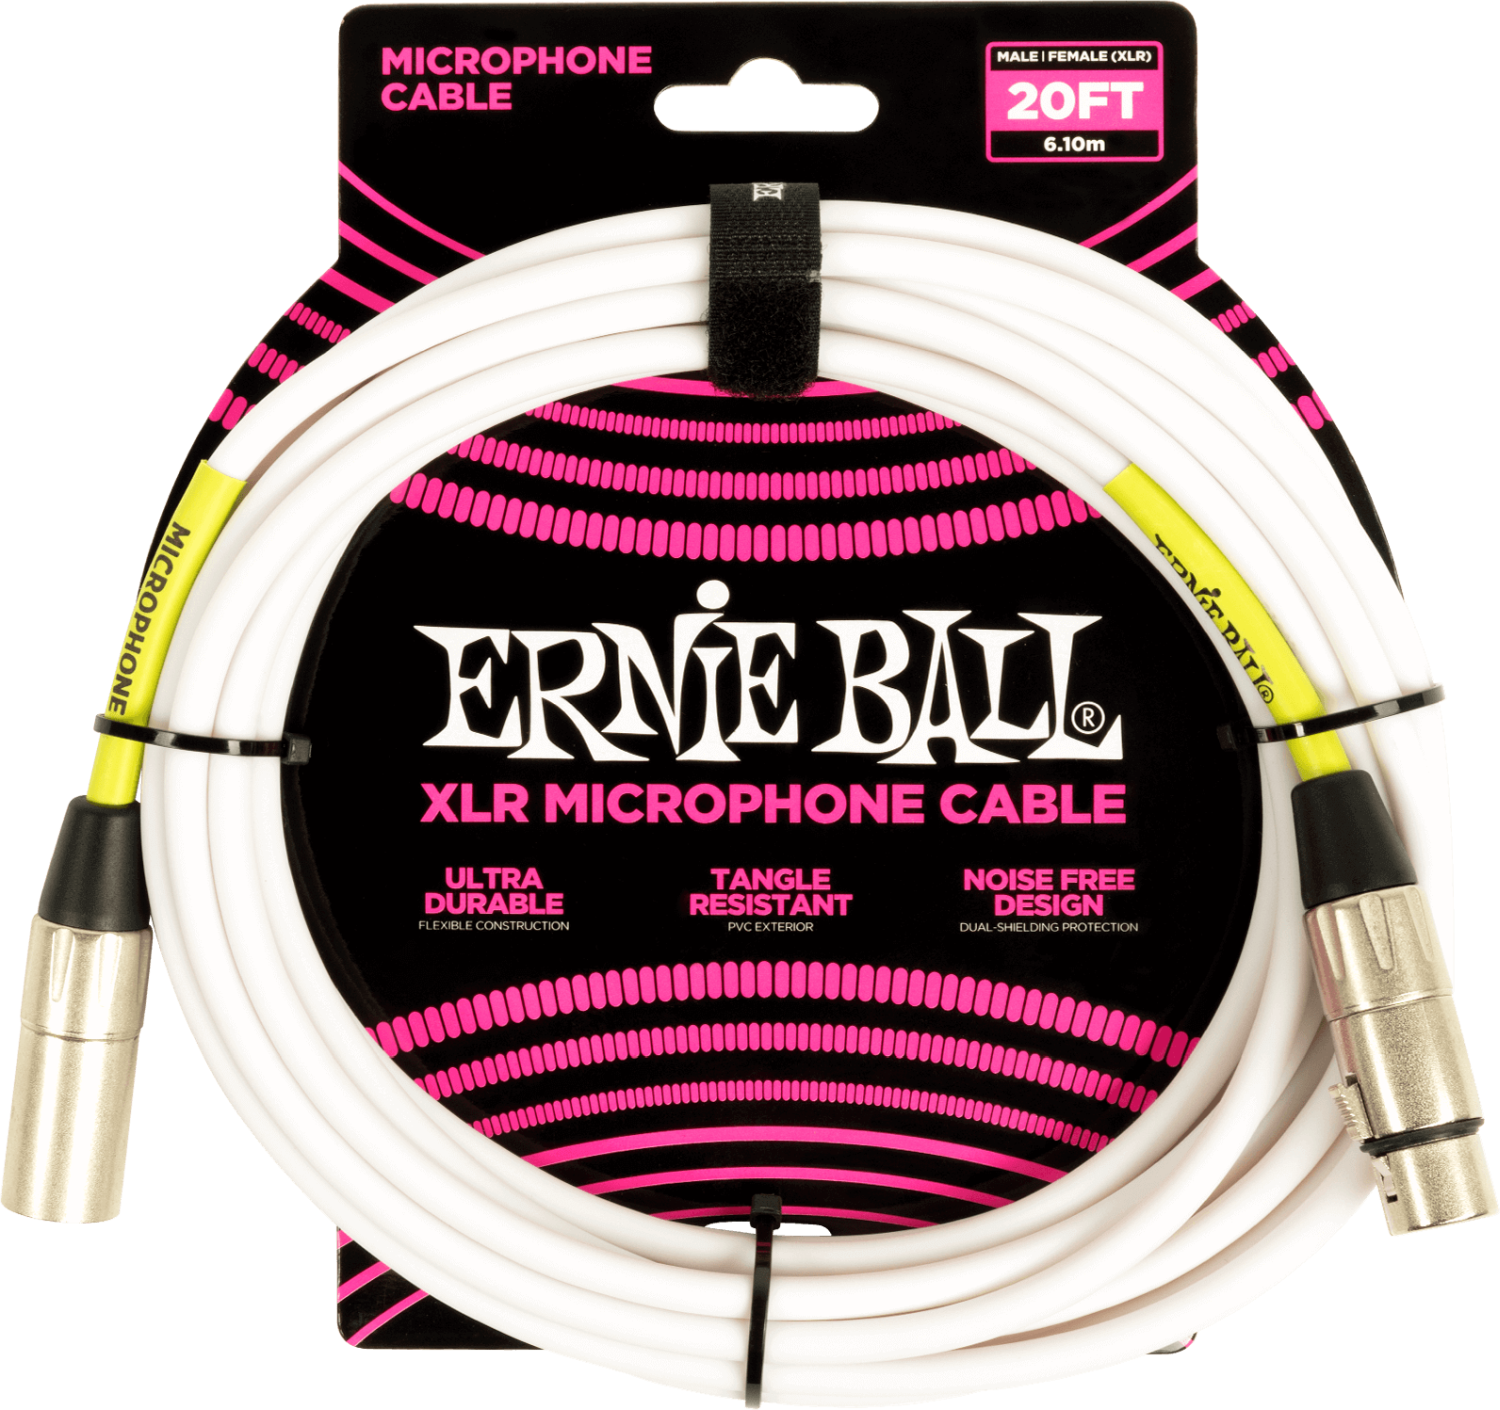 Mikrofonkabel Ernie Ball 6389 Weiß 6,1 m